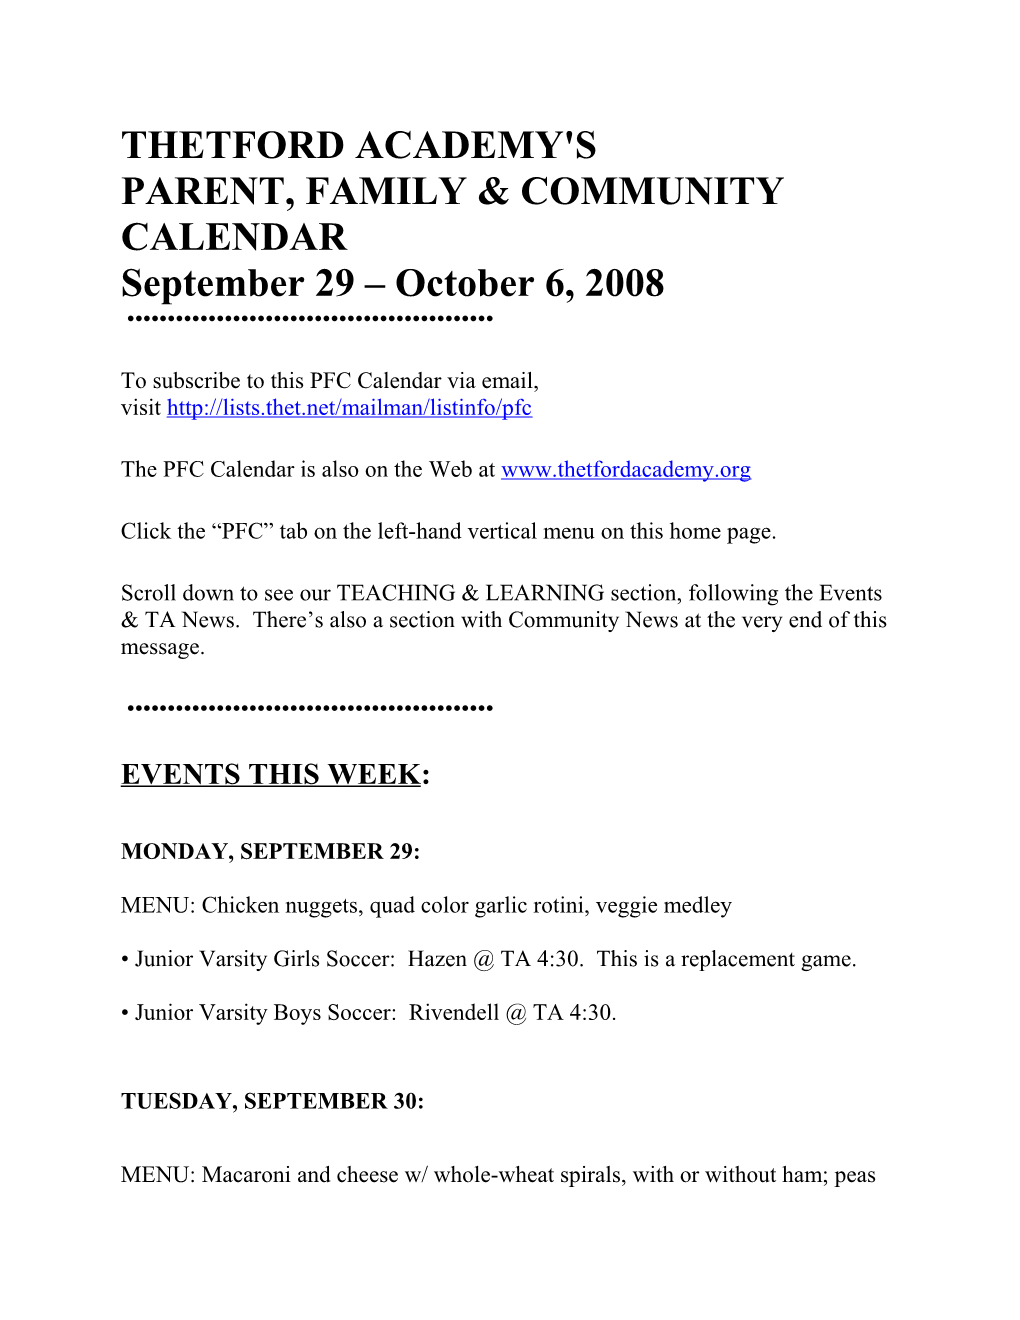 Parent, Family & Community Calendar